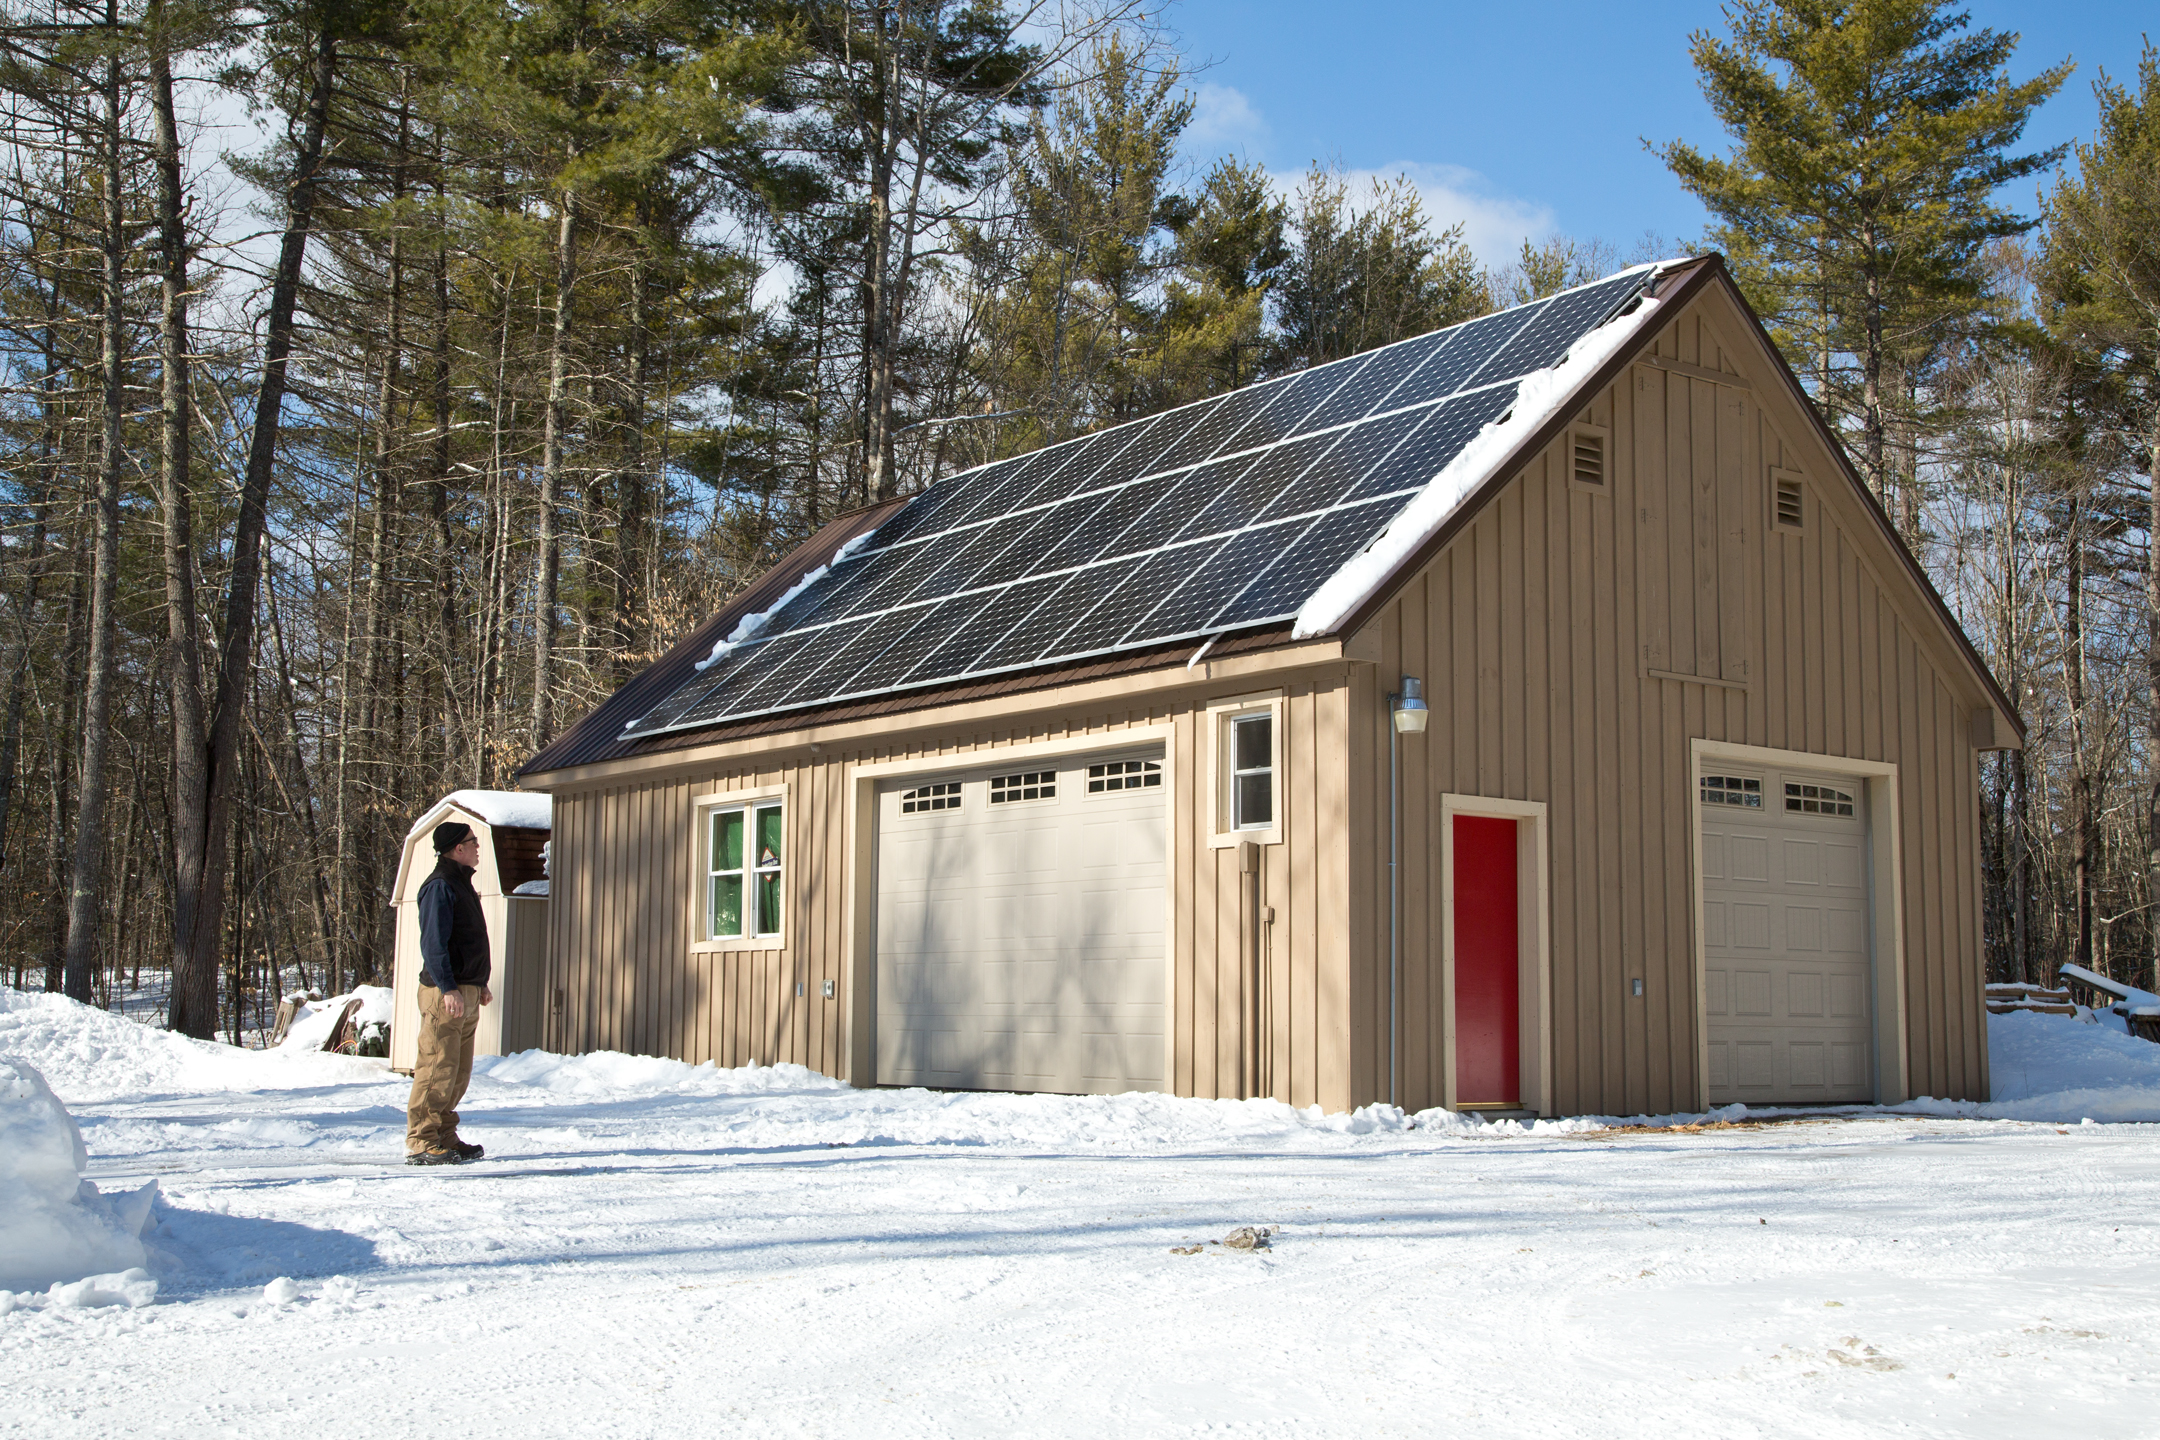 Installing Solar in Maine